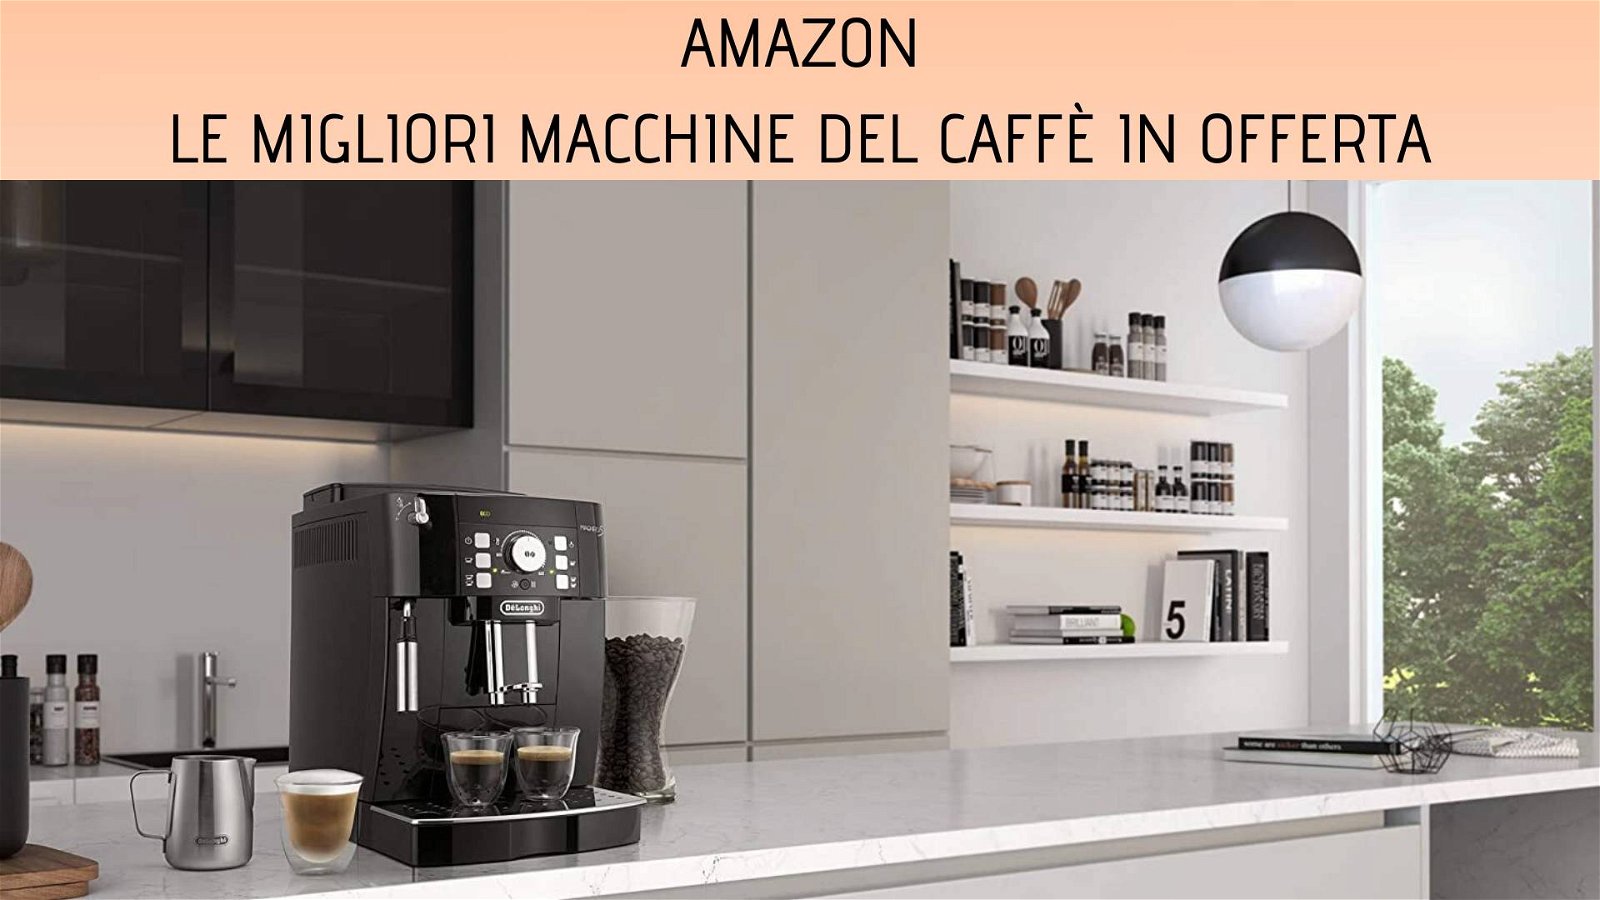 Immagine di Tante macchine del caffè in offerta su Amazon a prezzi imperdibili!